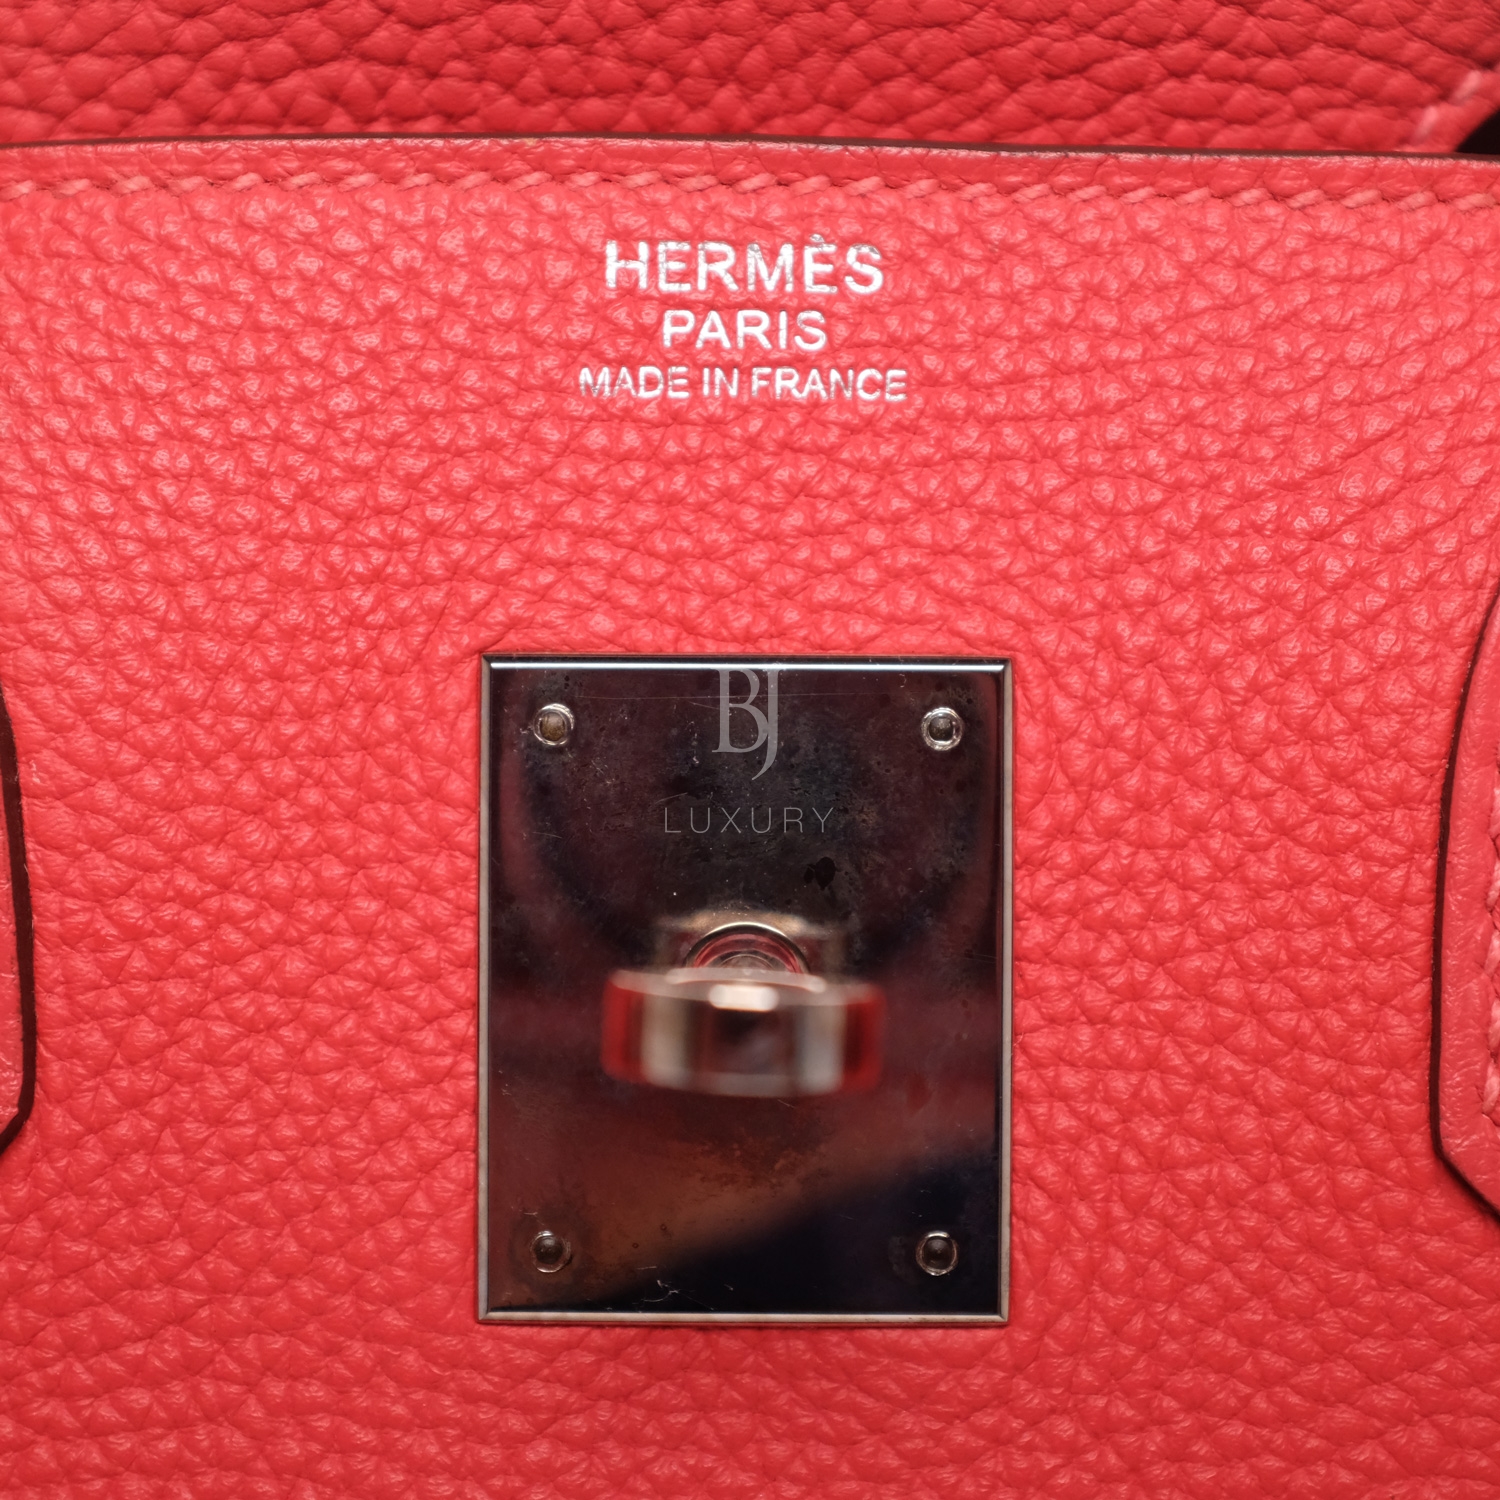 Hermes Birkin 30 Rougue Pivoine Togo Palladium BJ Luxury 2.jpg